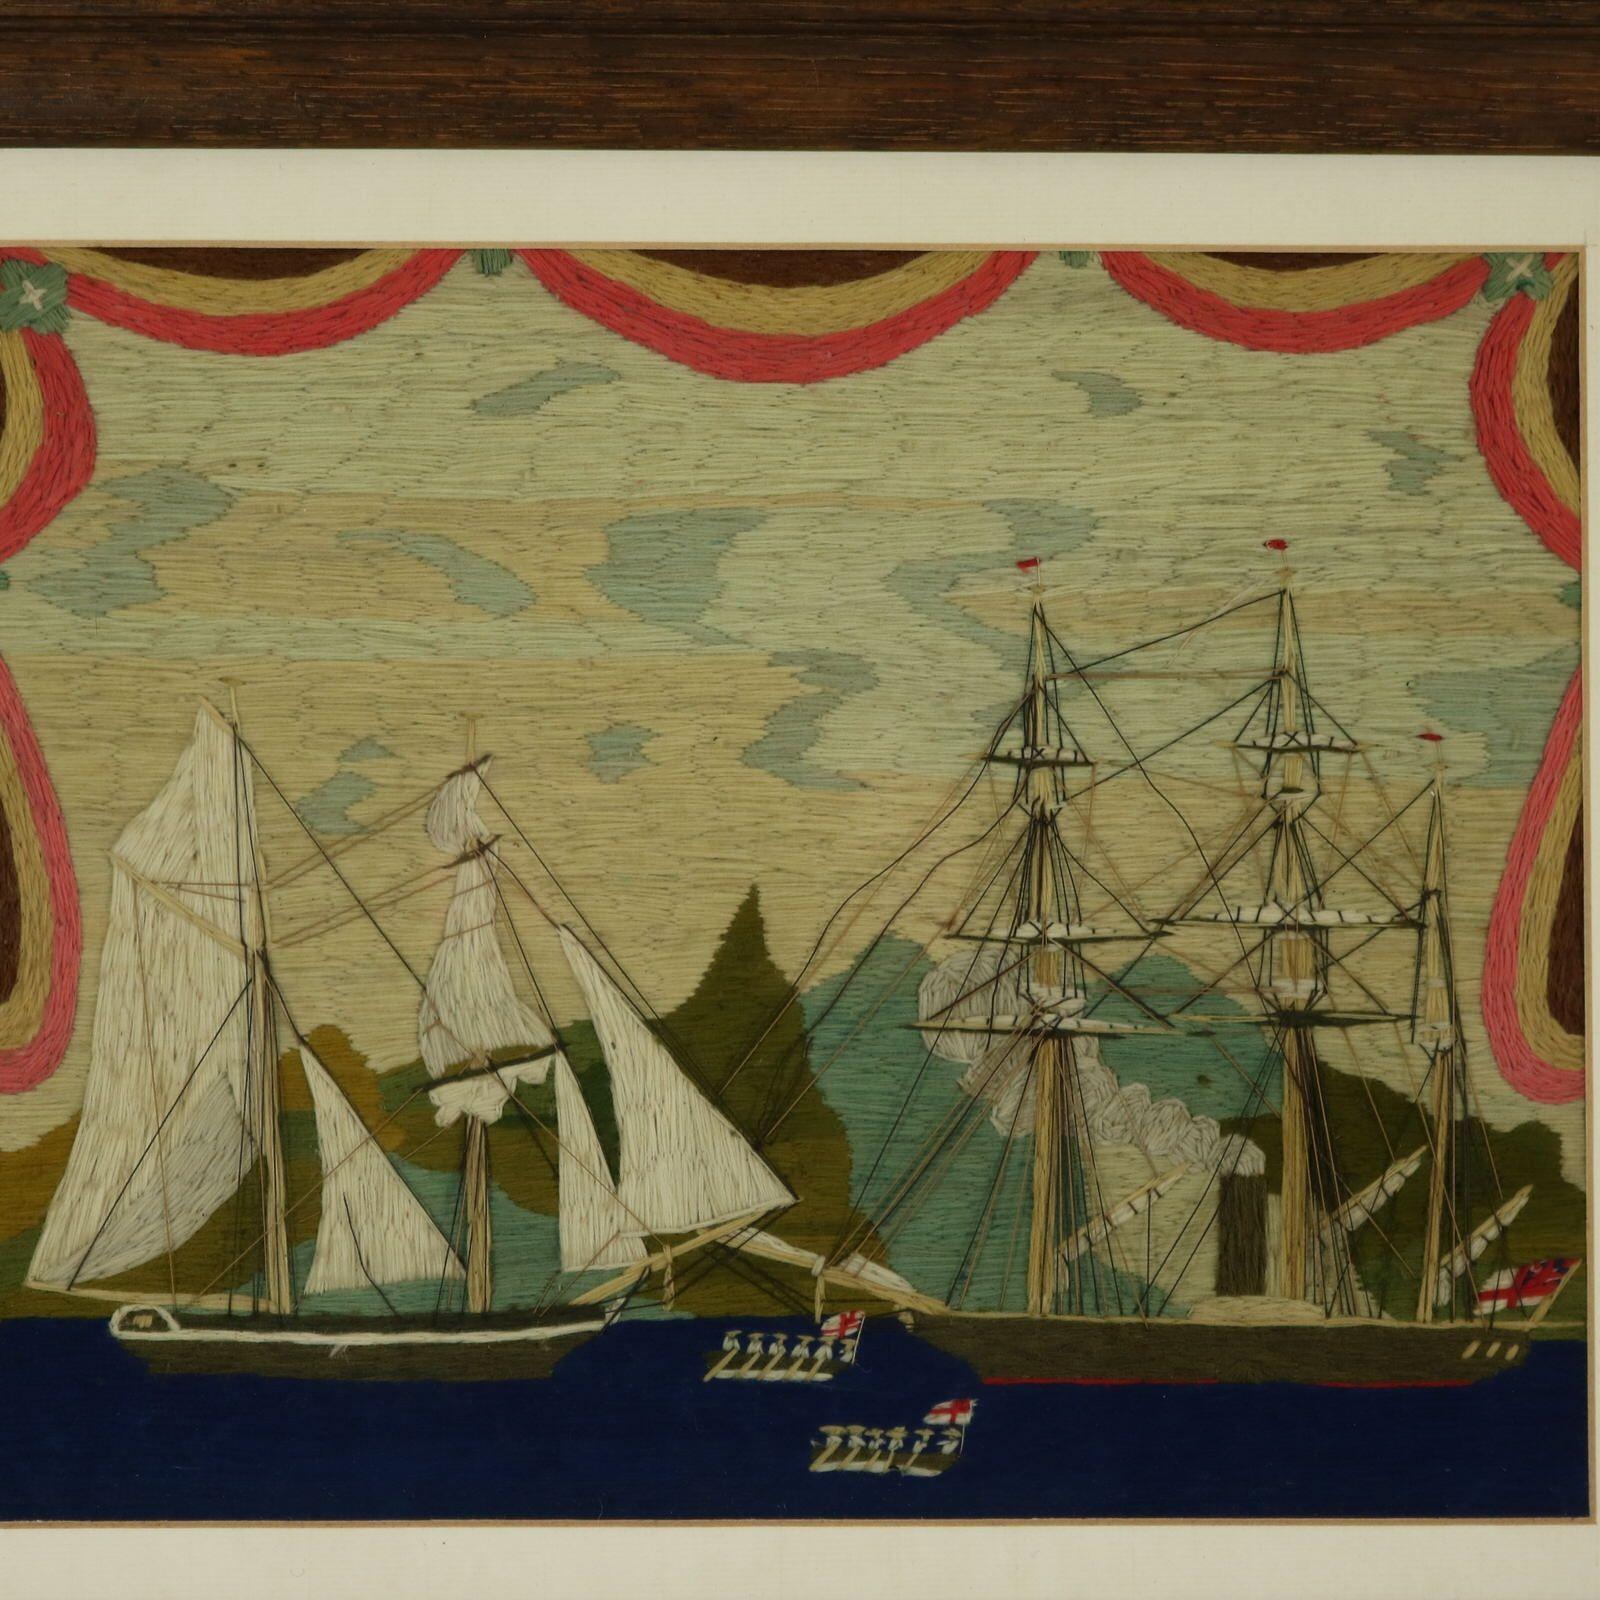 Broderie ancienne en laine de marin Image de deux voiliers et de marins dans des embarcations à rames. L'un des navires est propulsé à la vapeur et de la fumée s'échappe de la cheminée. Il s'étend sur le haut et les côtés de la pièce. La broderie